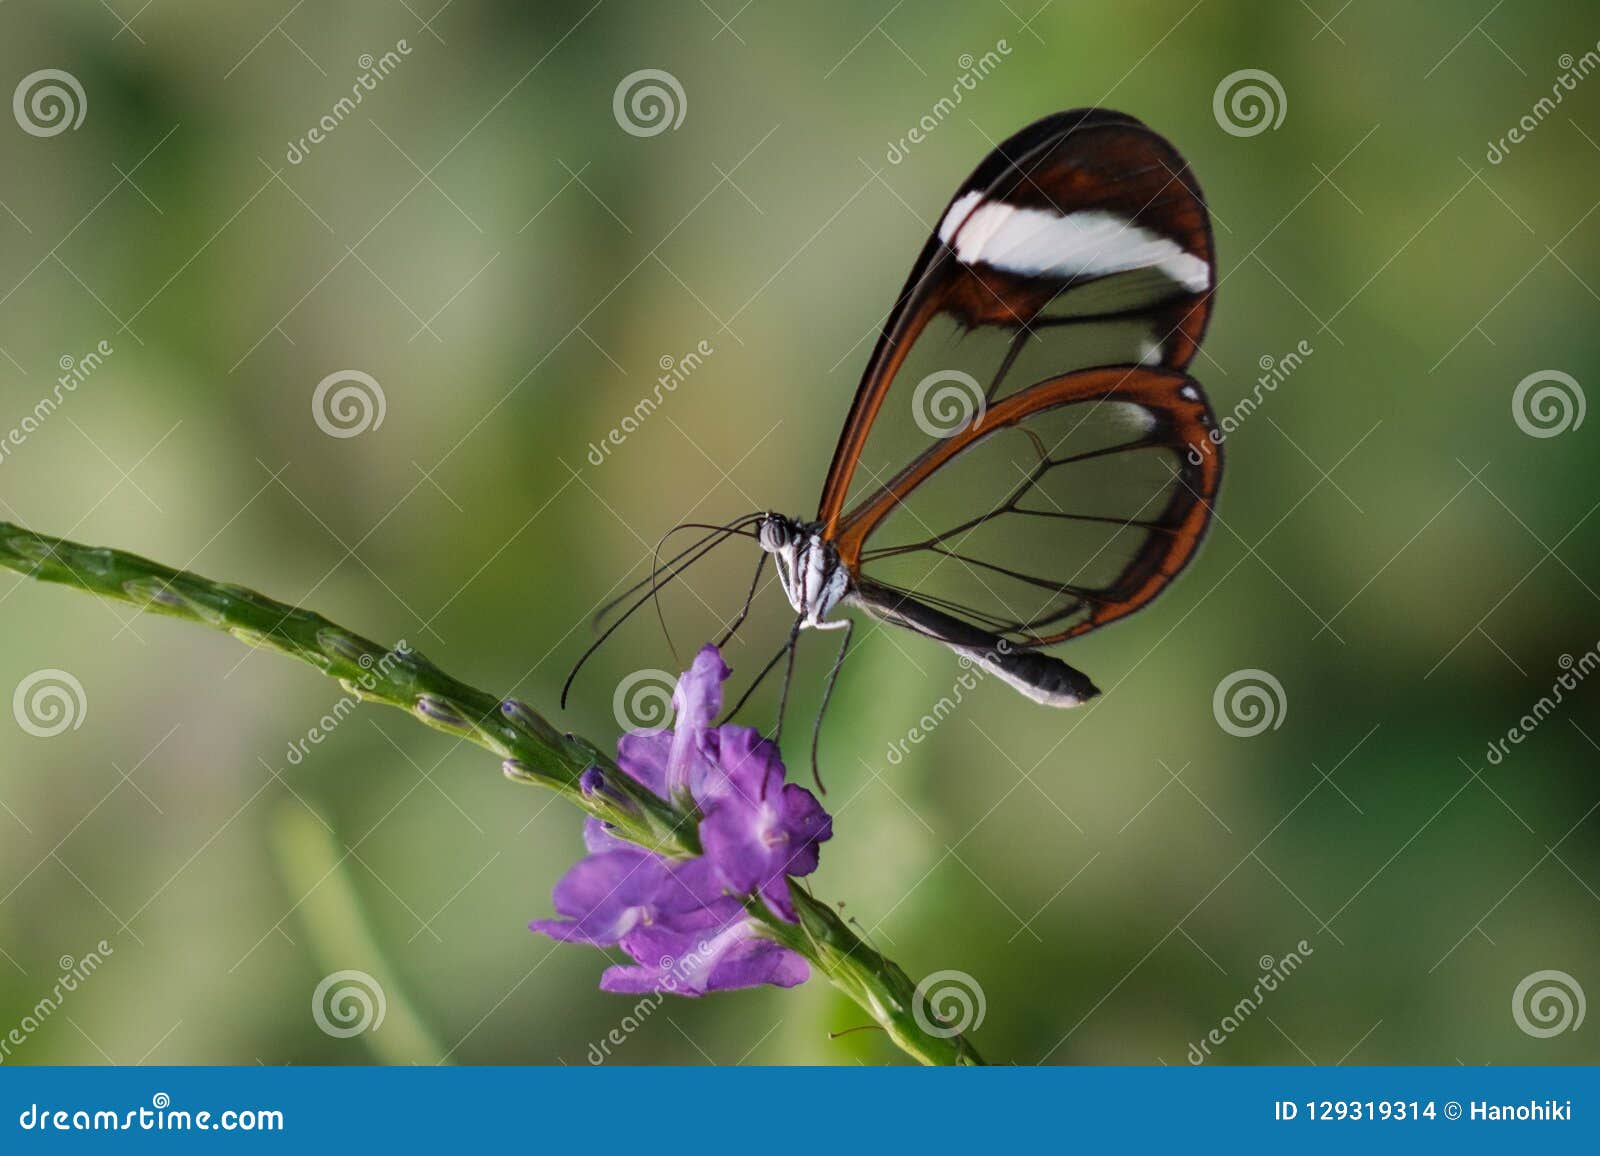 butterfly greta oto, glasswing butterfly on flower